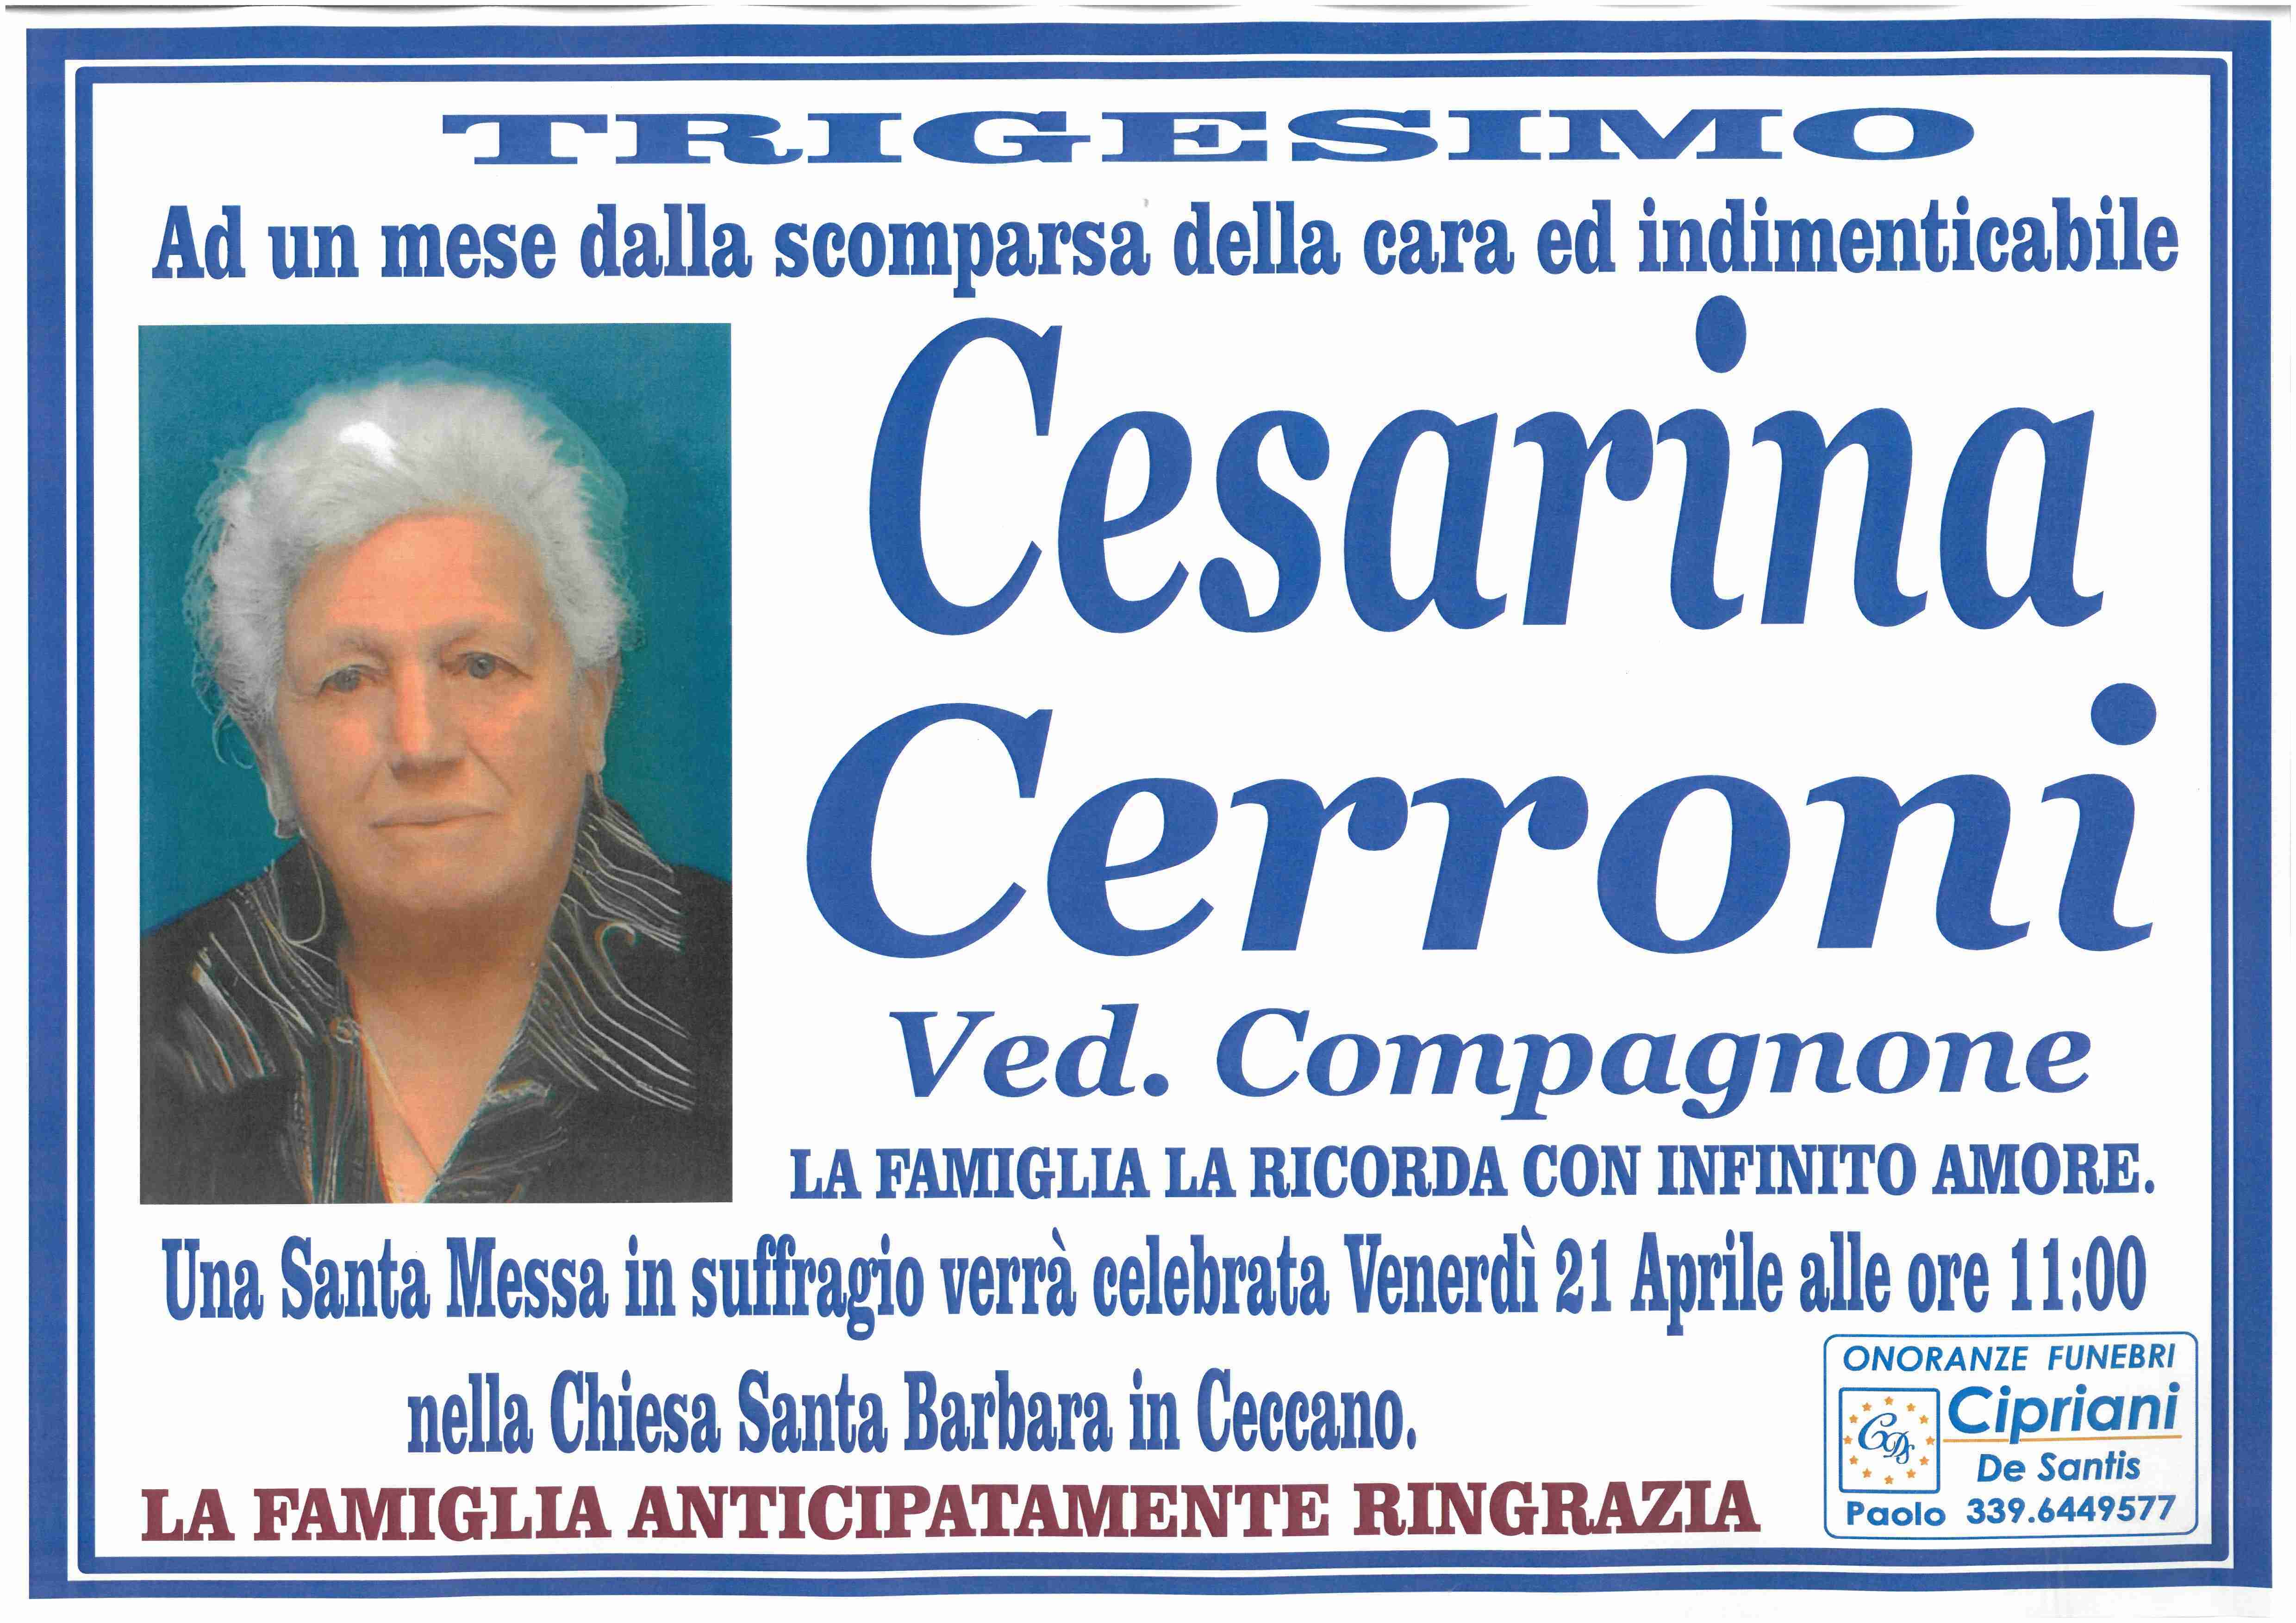 Cesarina Cerroni